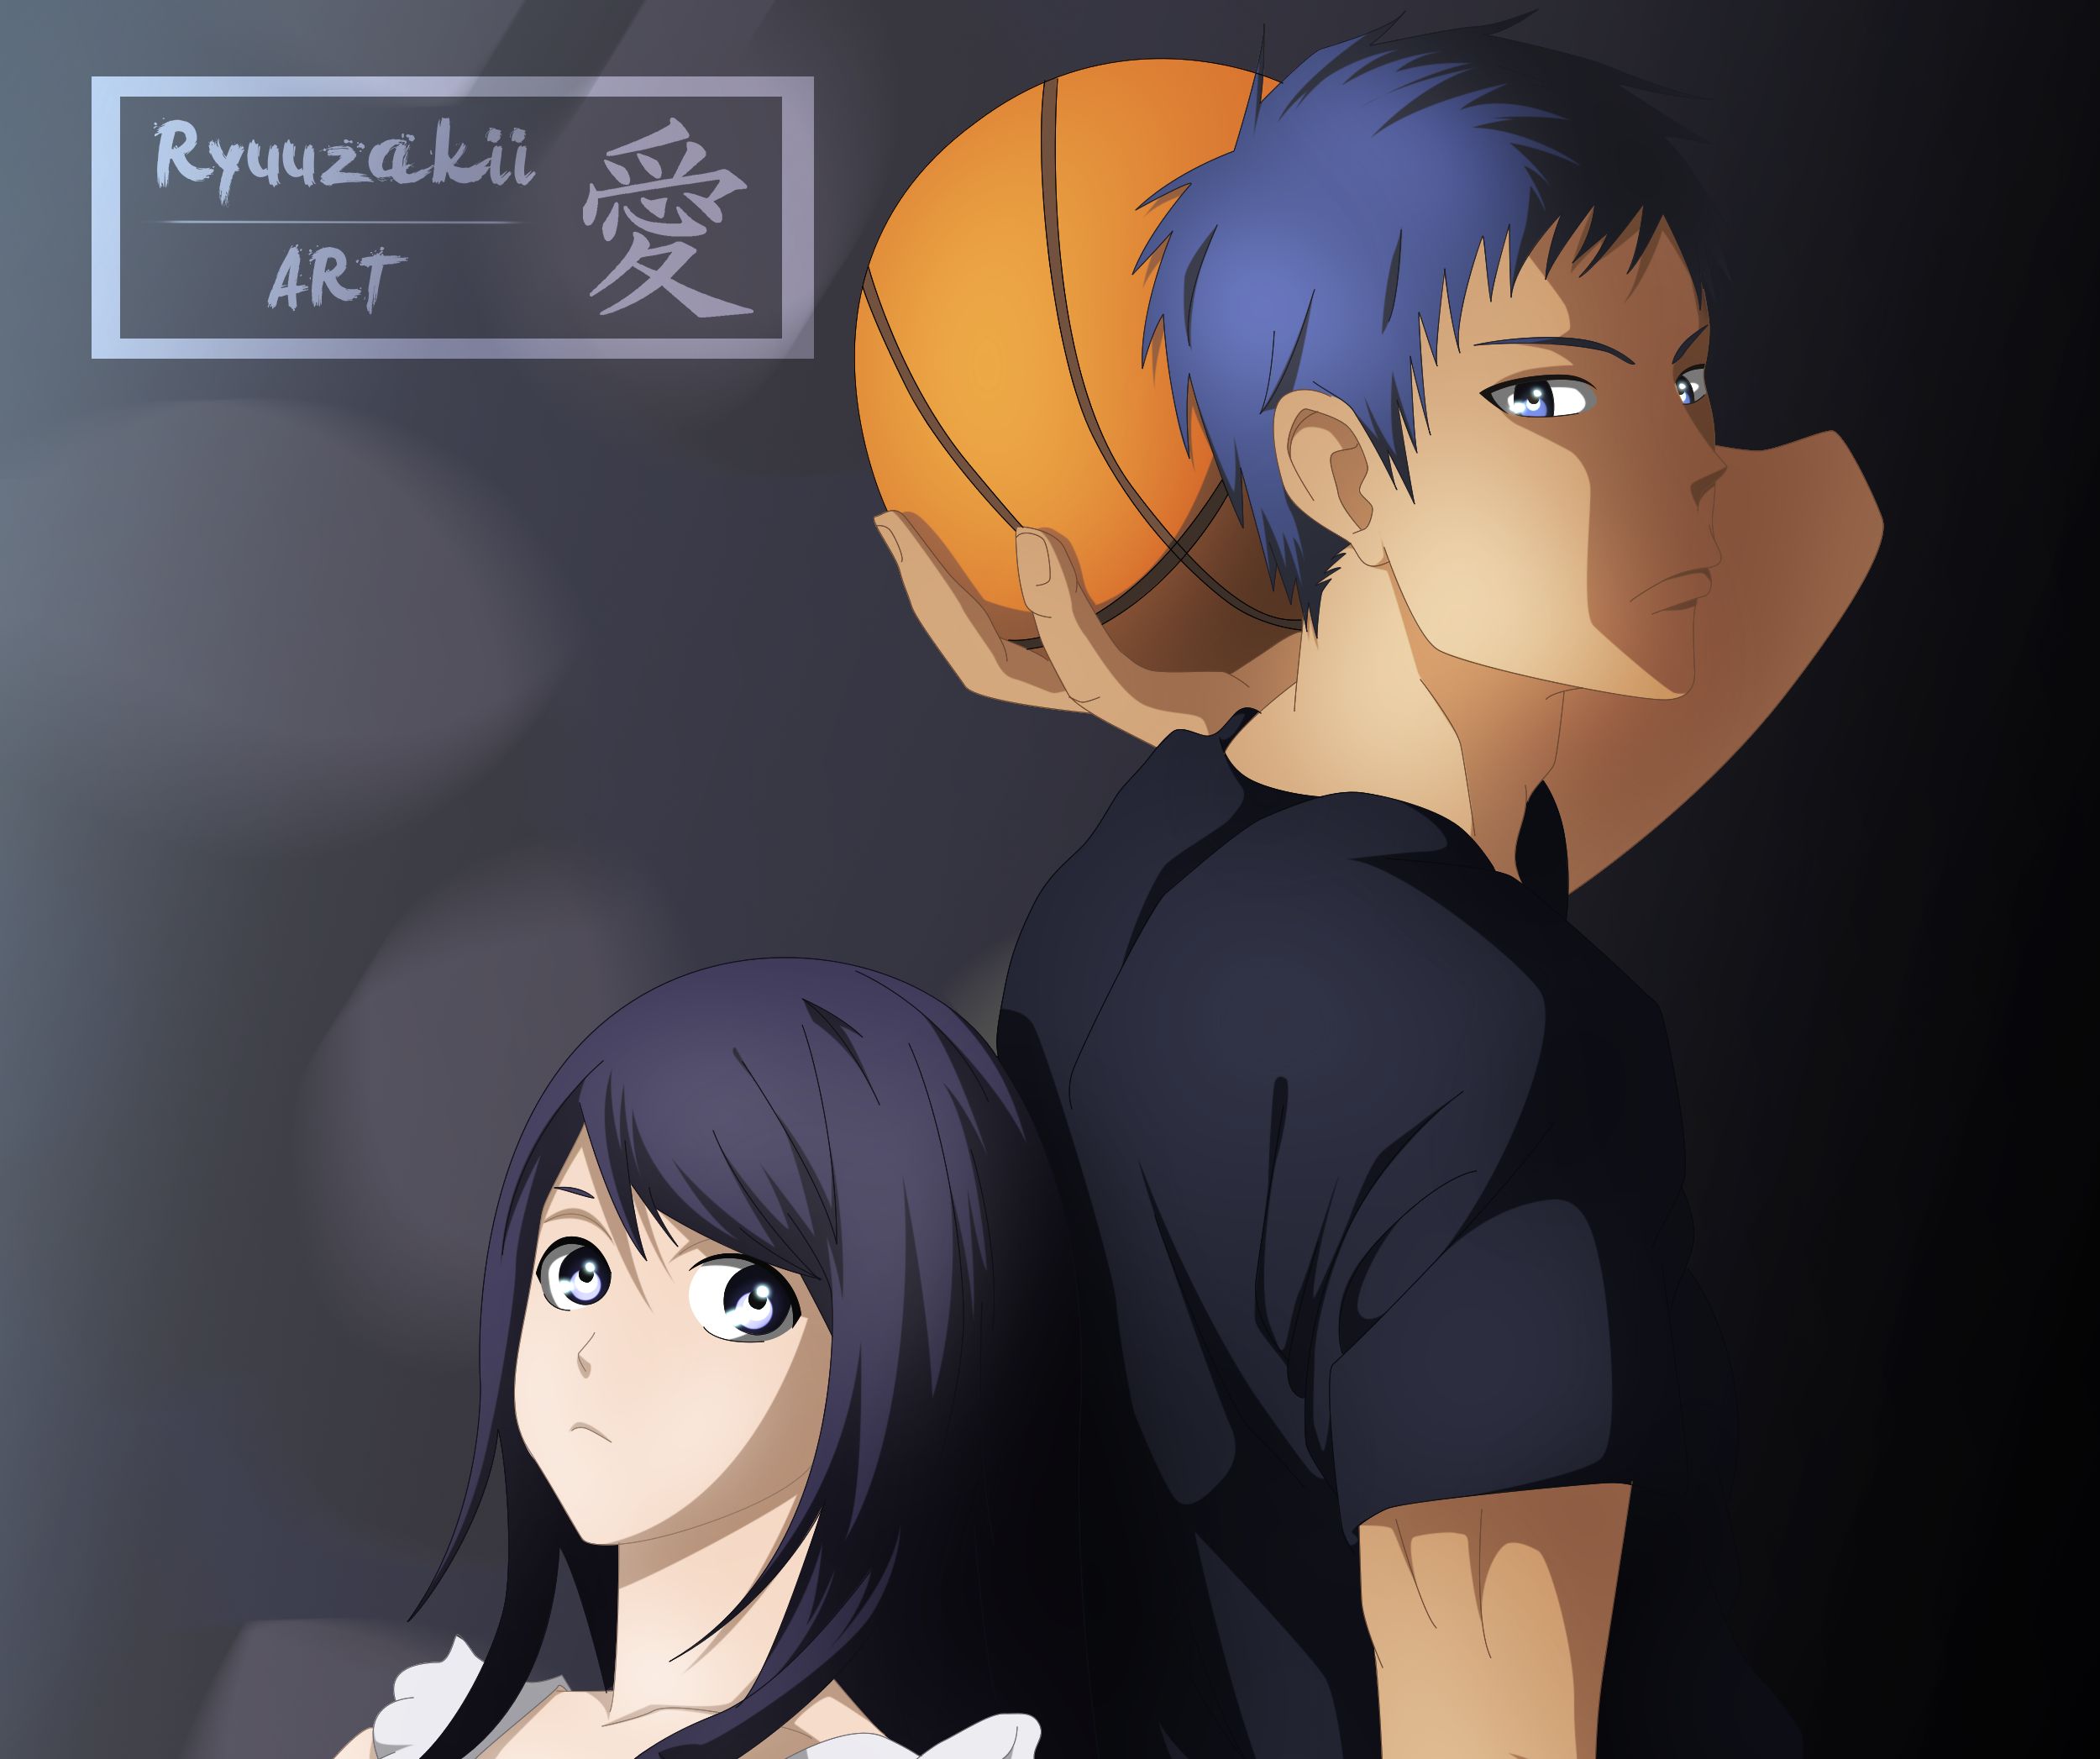 Baixe gratuitamente a imagem Anime, Daiki Aomine, Kuroko No Basket na área de trabalho do seu PC